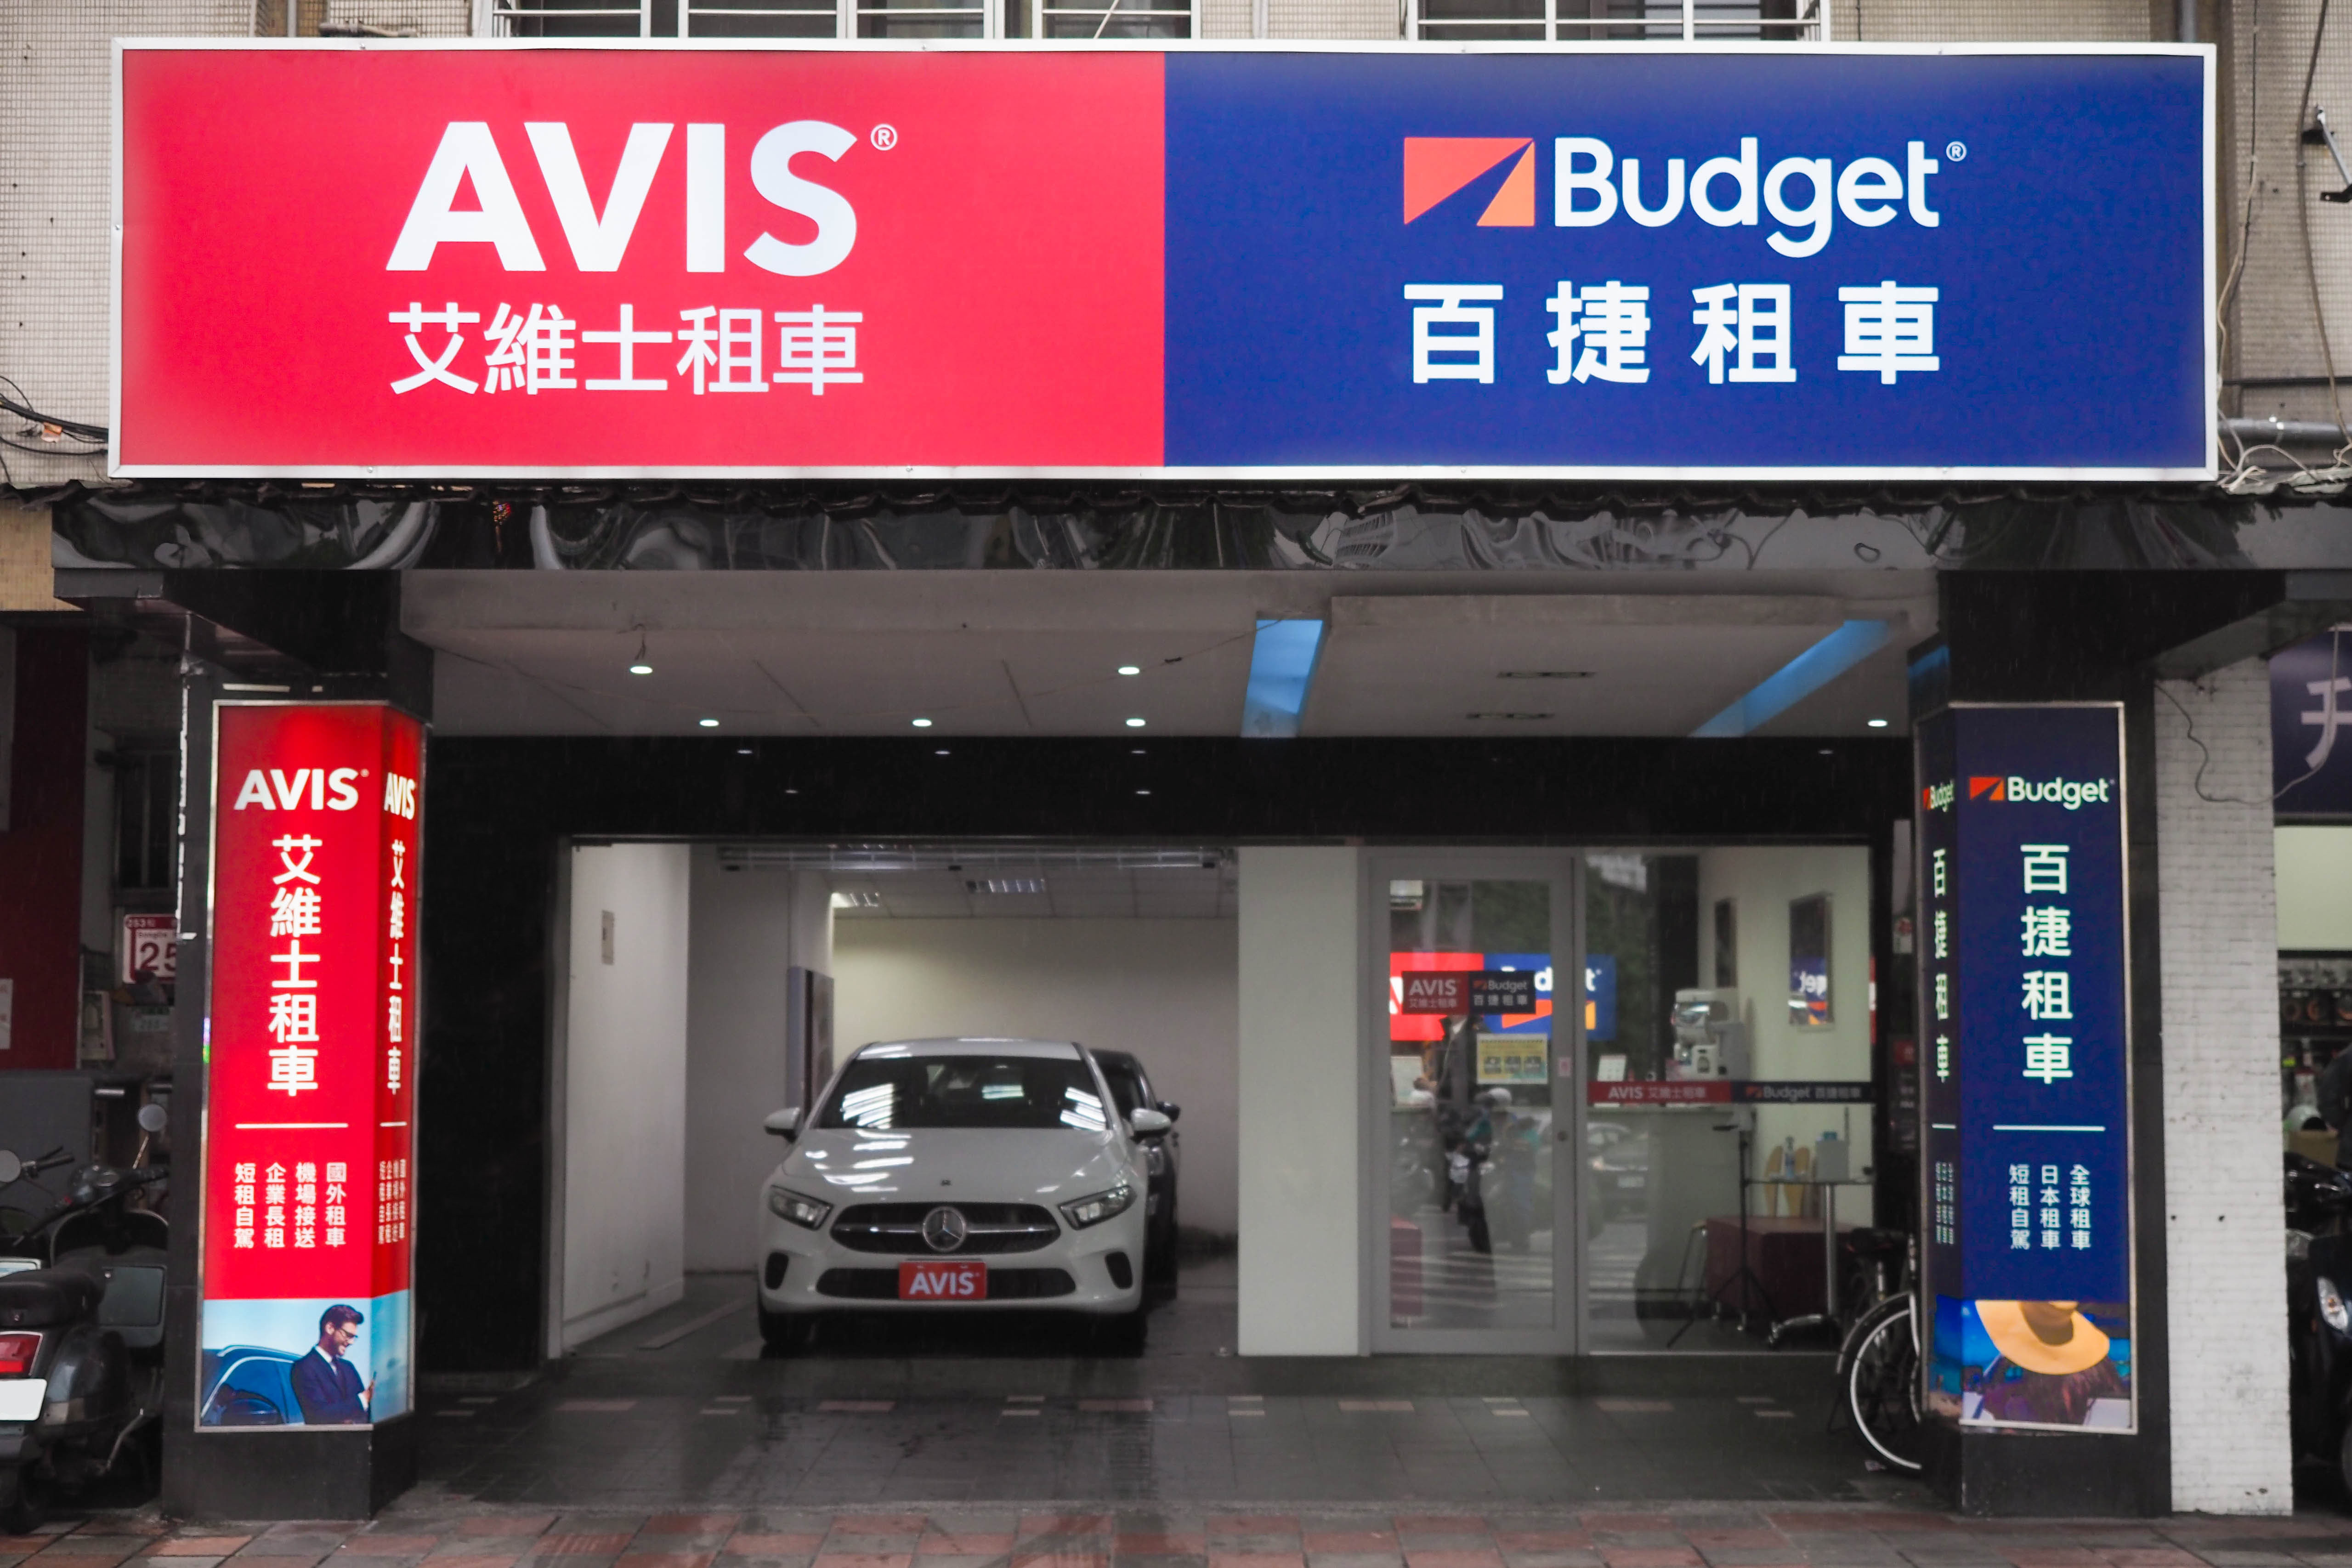 全球租車領導品牌AVIS於10月起正式迎回原有的中文品牌名「艾維士」